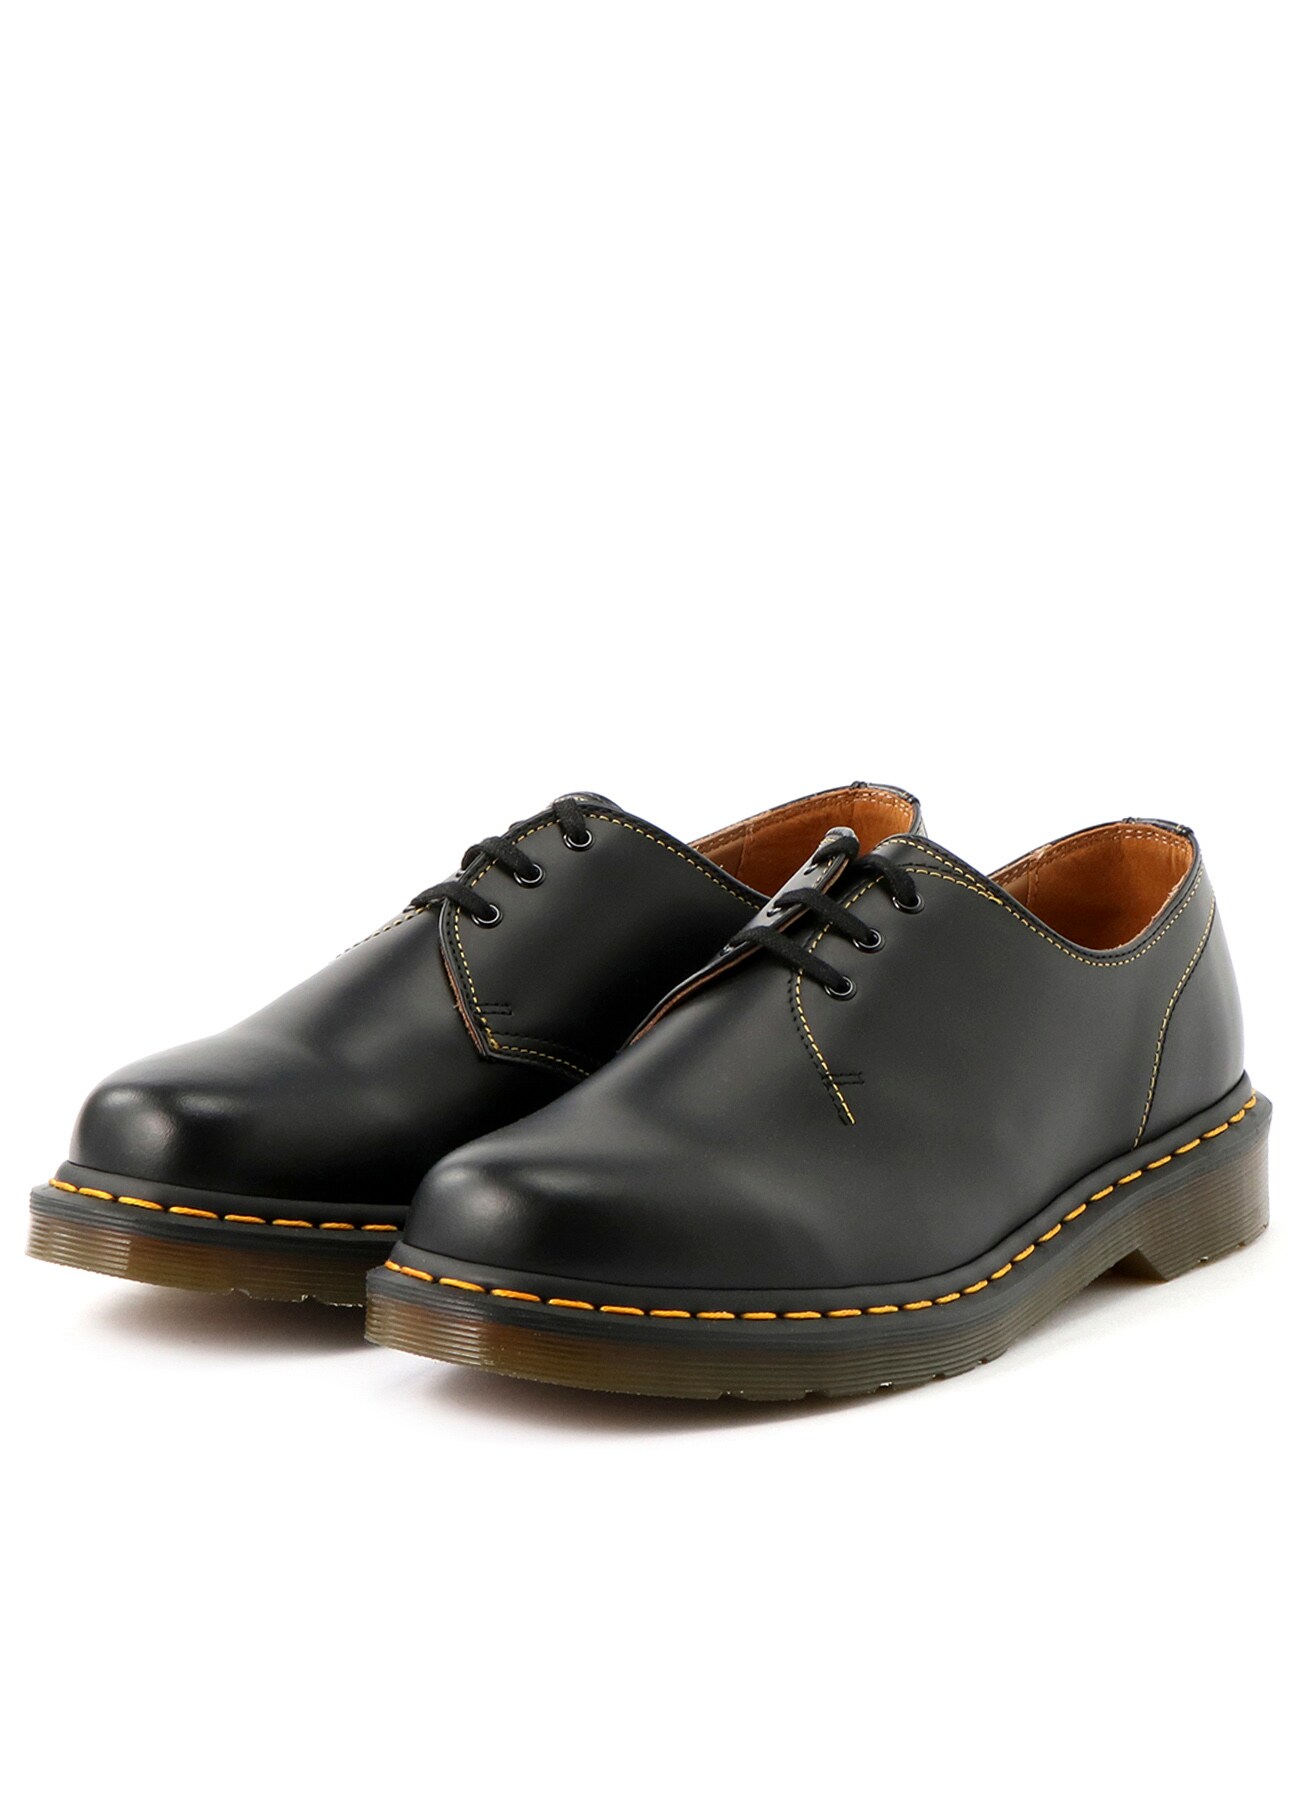 dr martens classic black service shoe